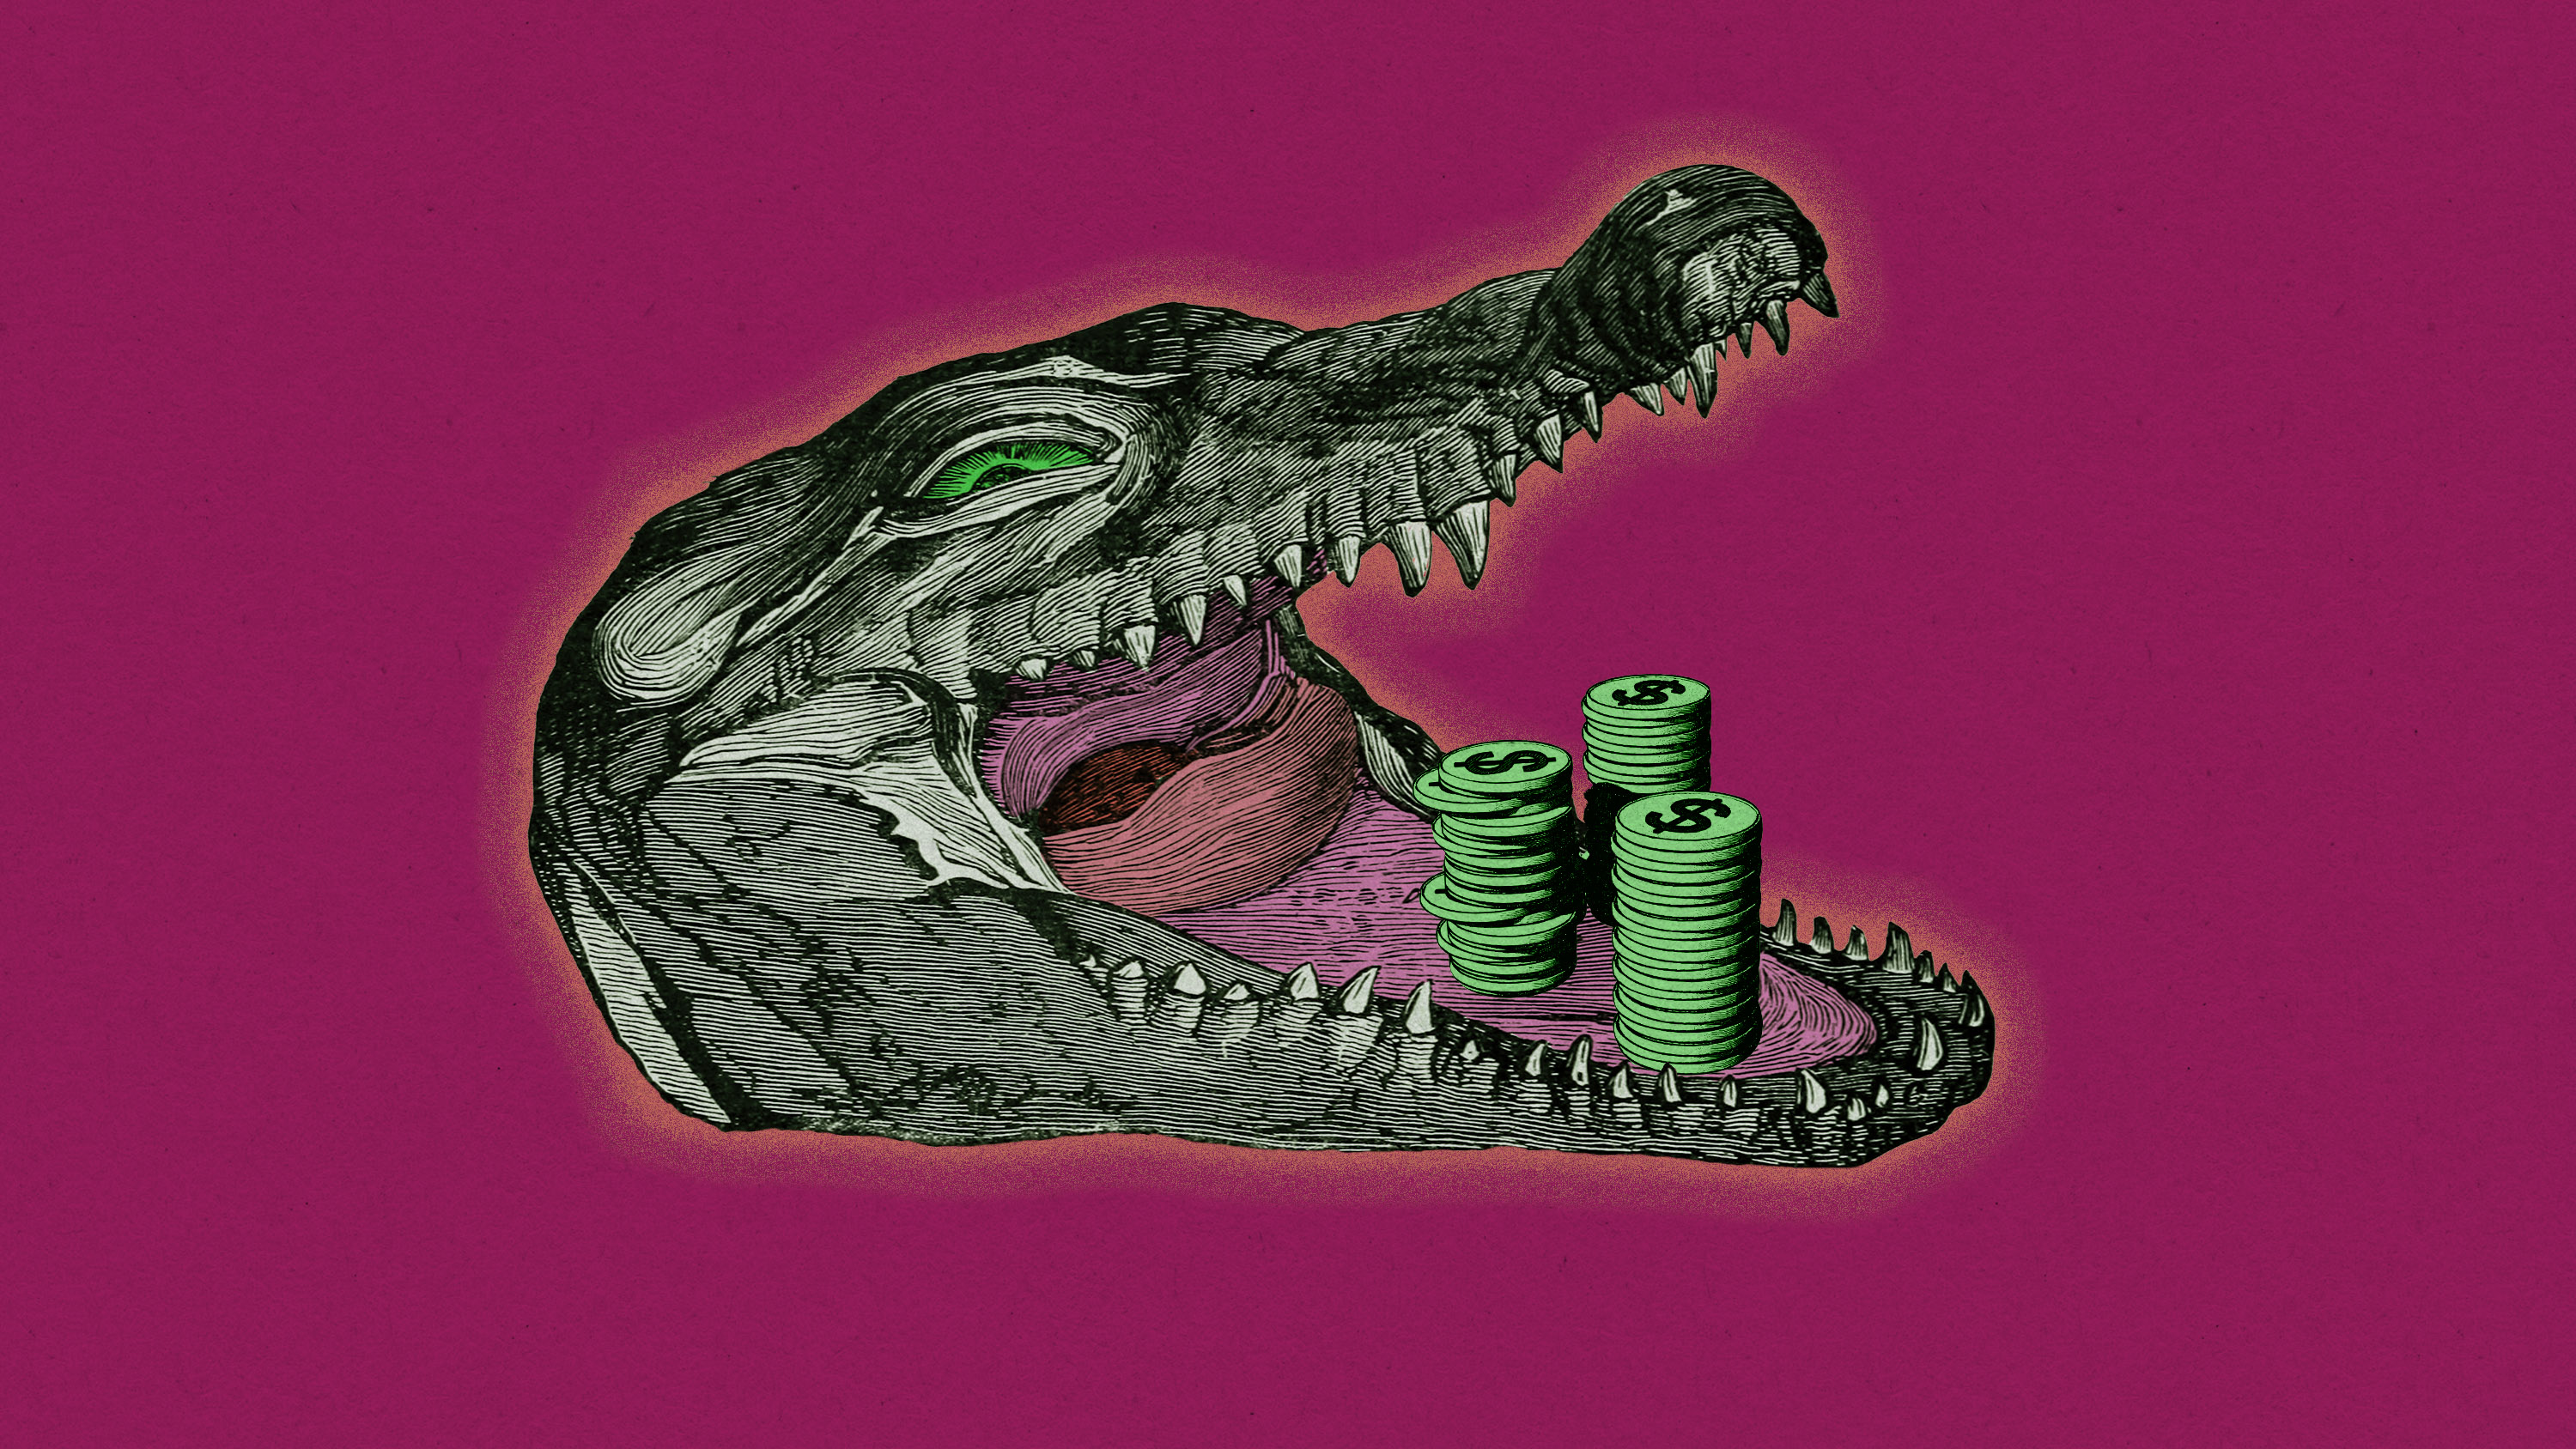 la cabeza de un cocodrilo resplandeciente con montones de monedas en la boca abierta